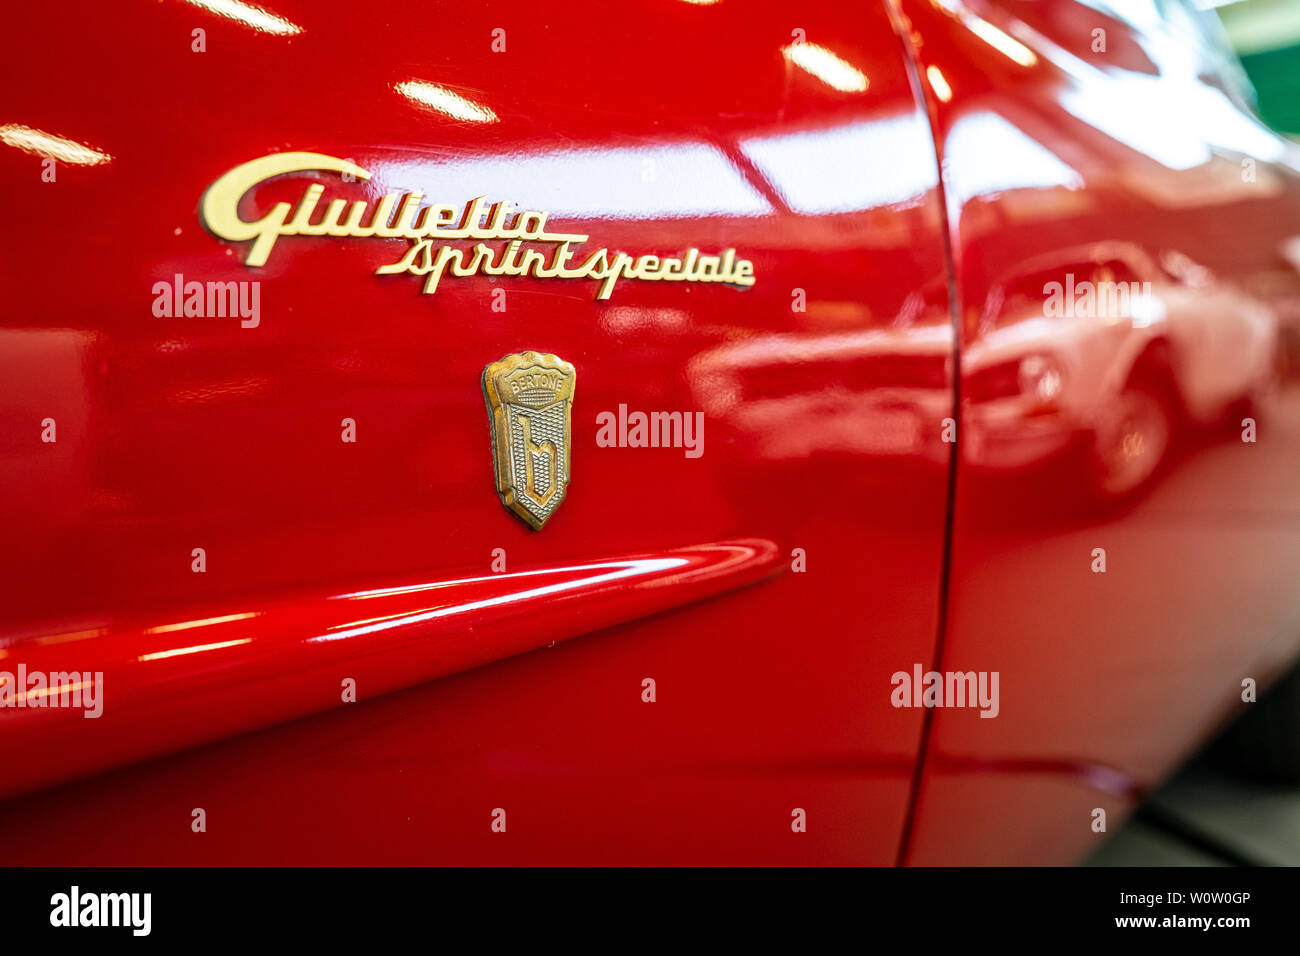 PAAREN IM GLIEN; Deutschland - Mai 19; 2018: Emblem der Sportwagen Alfa Romeo Giulietta Sprint Speciale. Ansicht von hinten. Karosseriebauer Bertone. Oldtimer-show 2018 sterben. Stockfoto